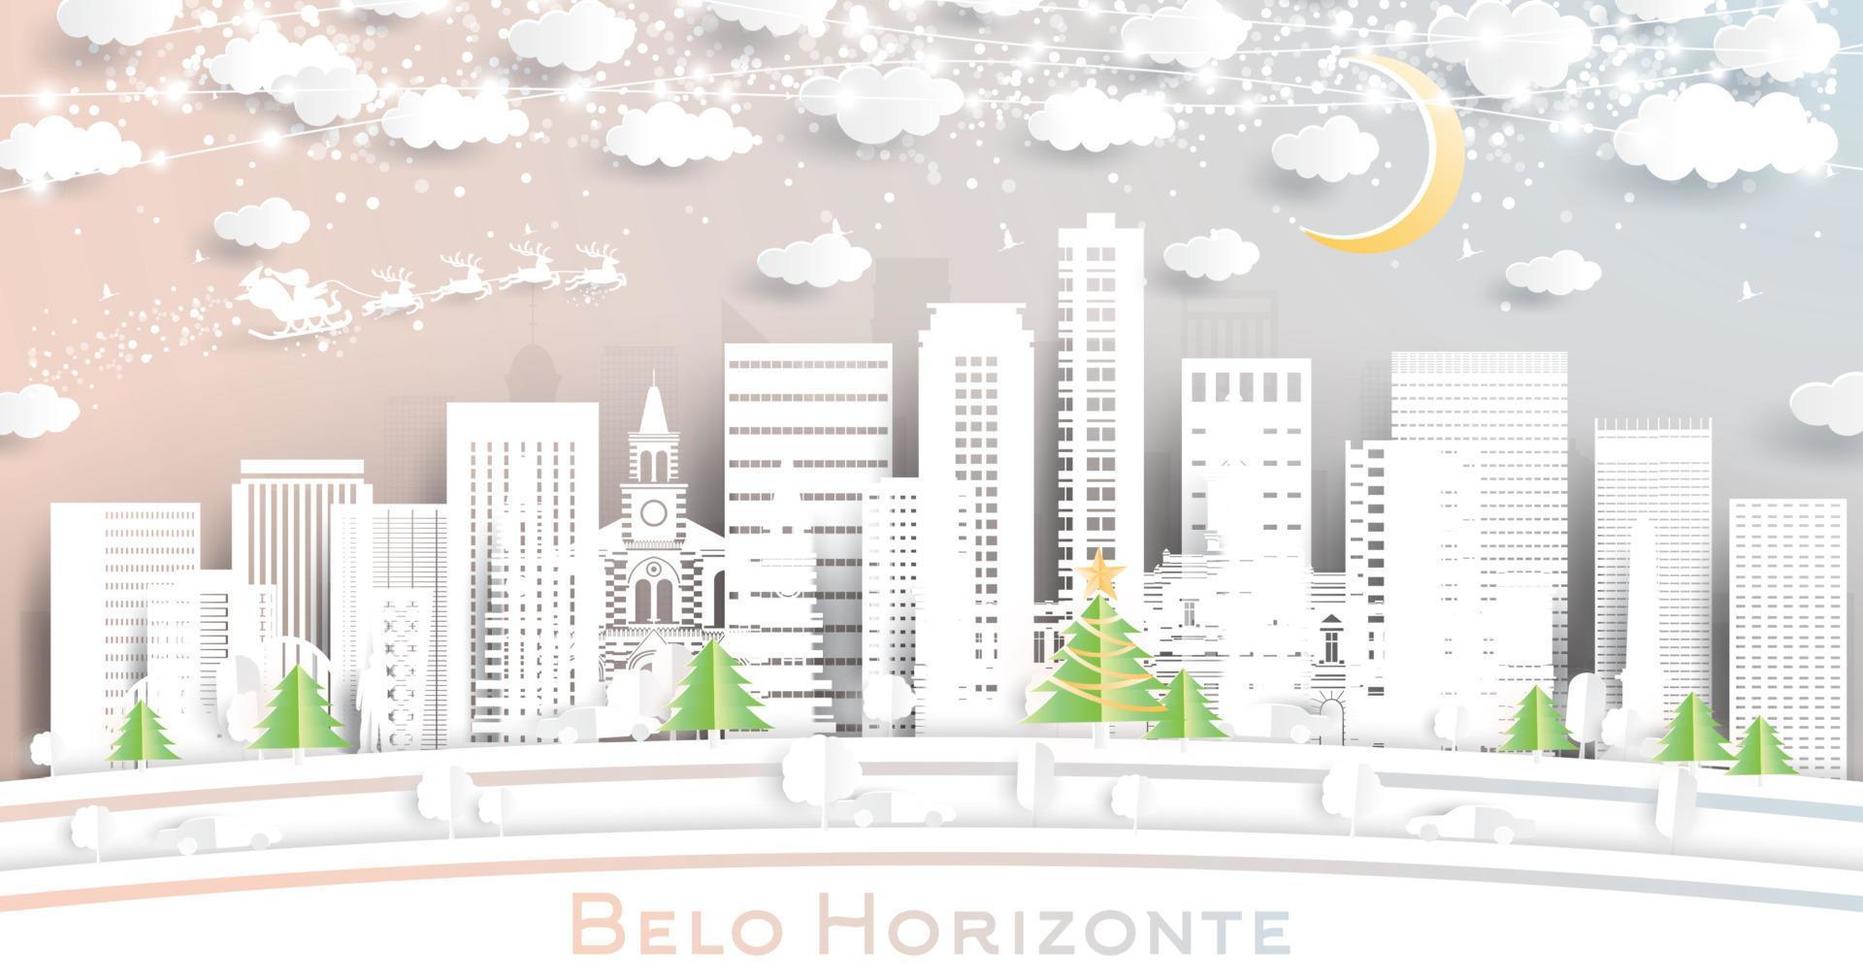 horizonte de la ciudad de belo horizonte brasil en estilo de corte de papel con copos de nieve, luna y guirnalda de neón. vector